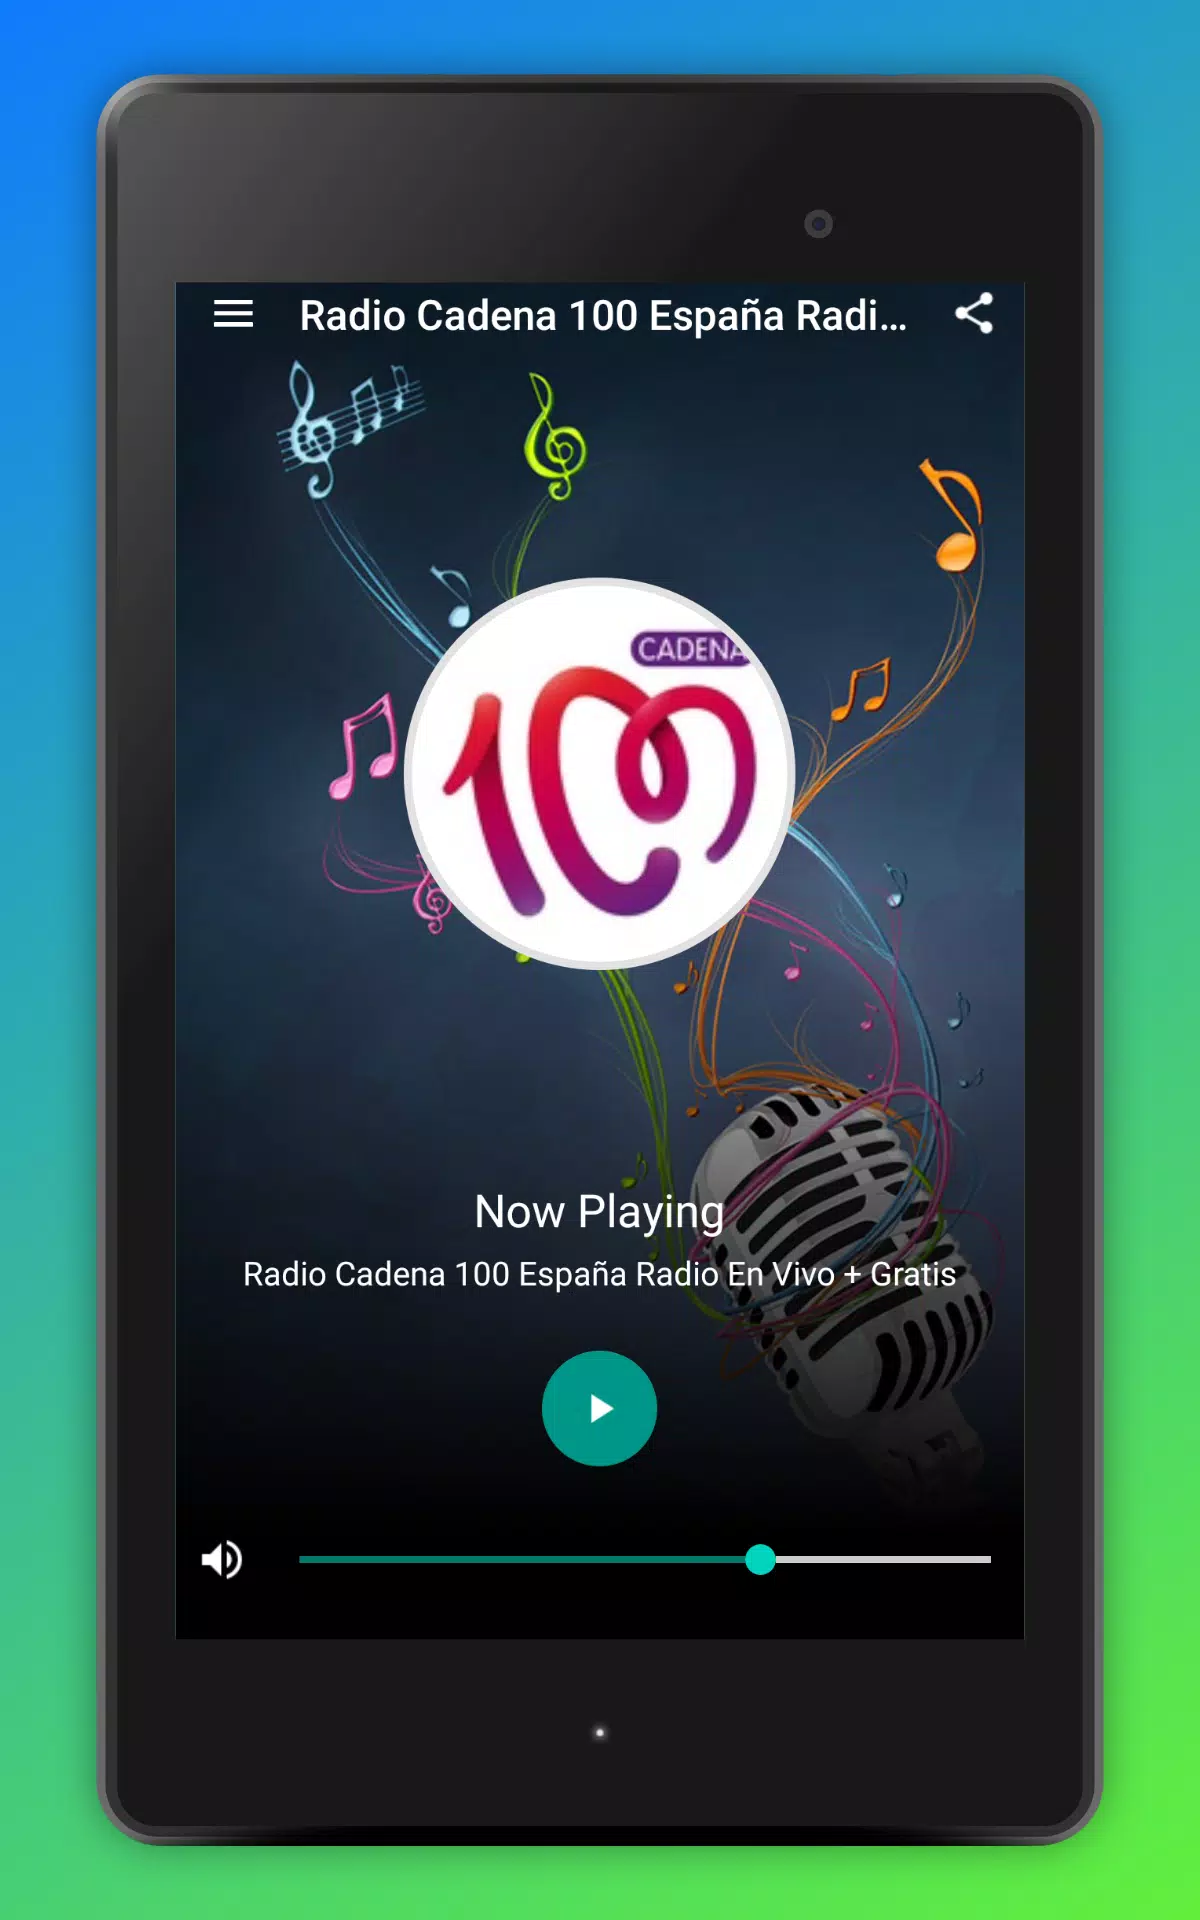 Radio Cadena 100 España Radio En Vivo + Gratis安卓版应用APK下载